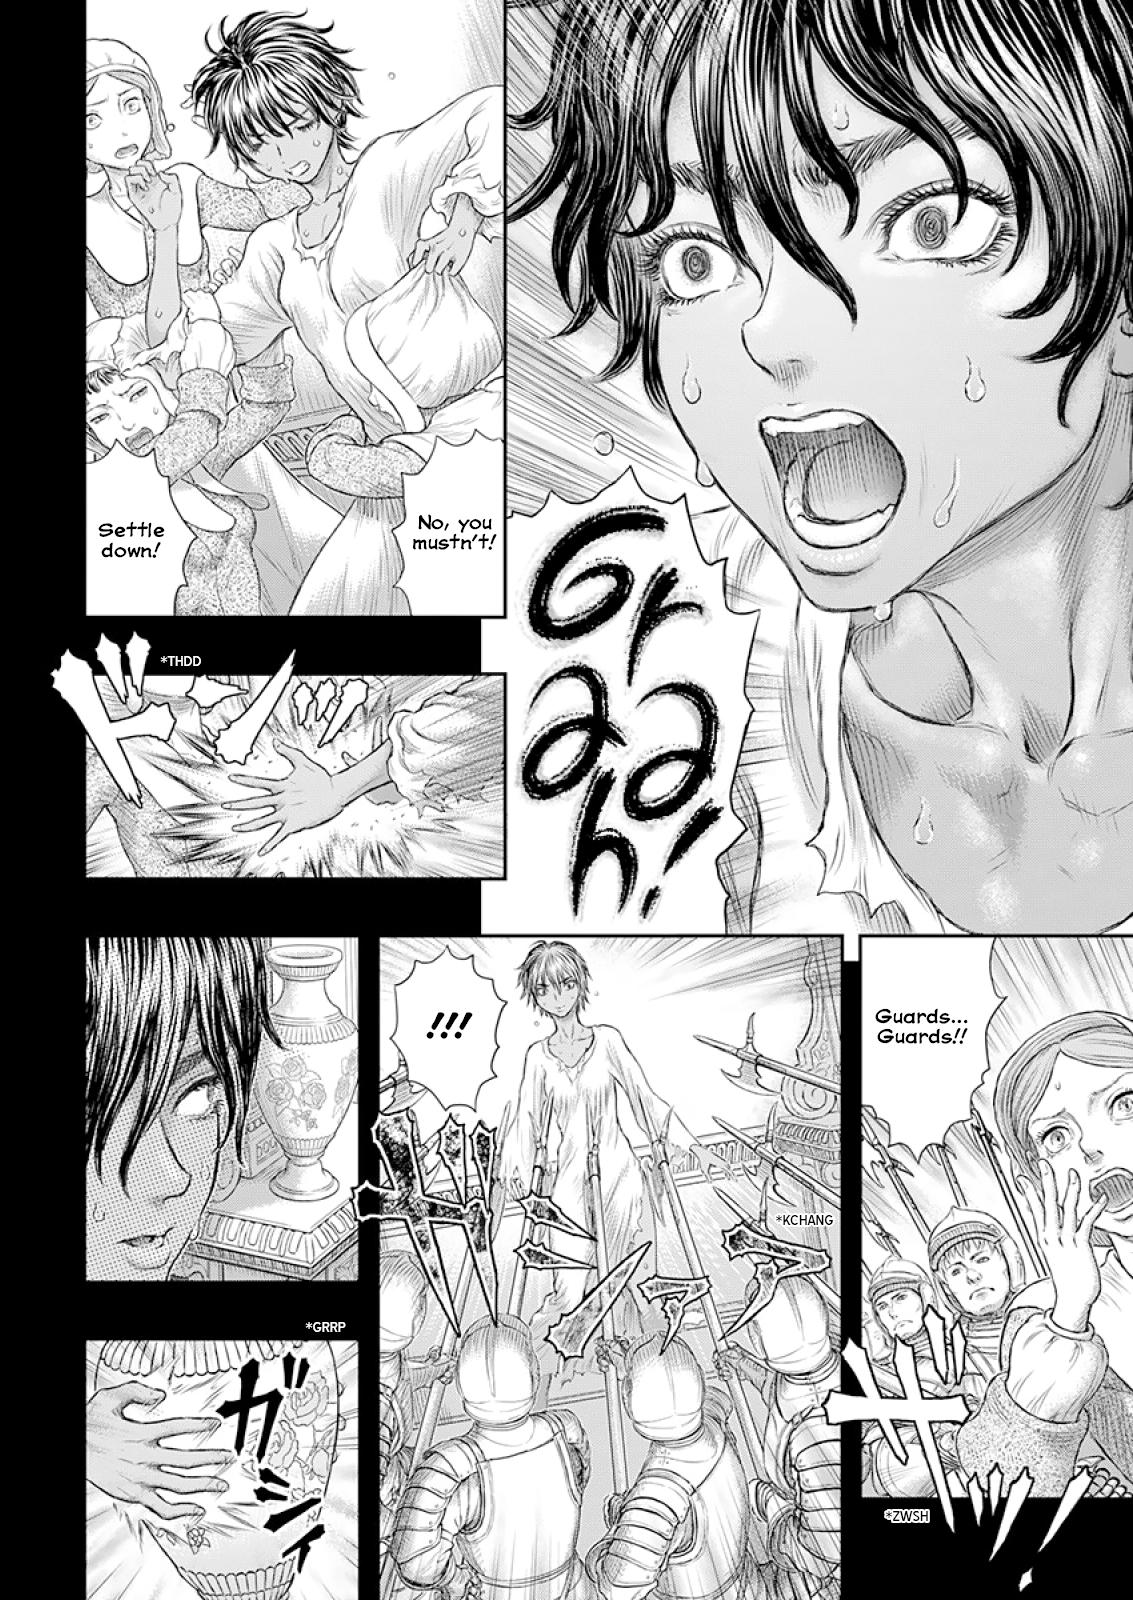 Berserk Manga Chapter 372 image 15